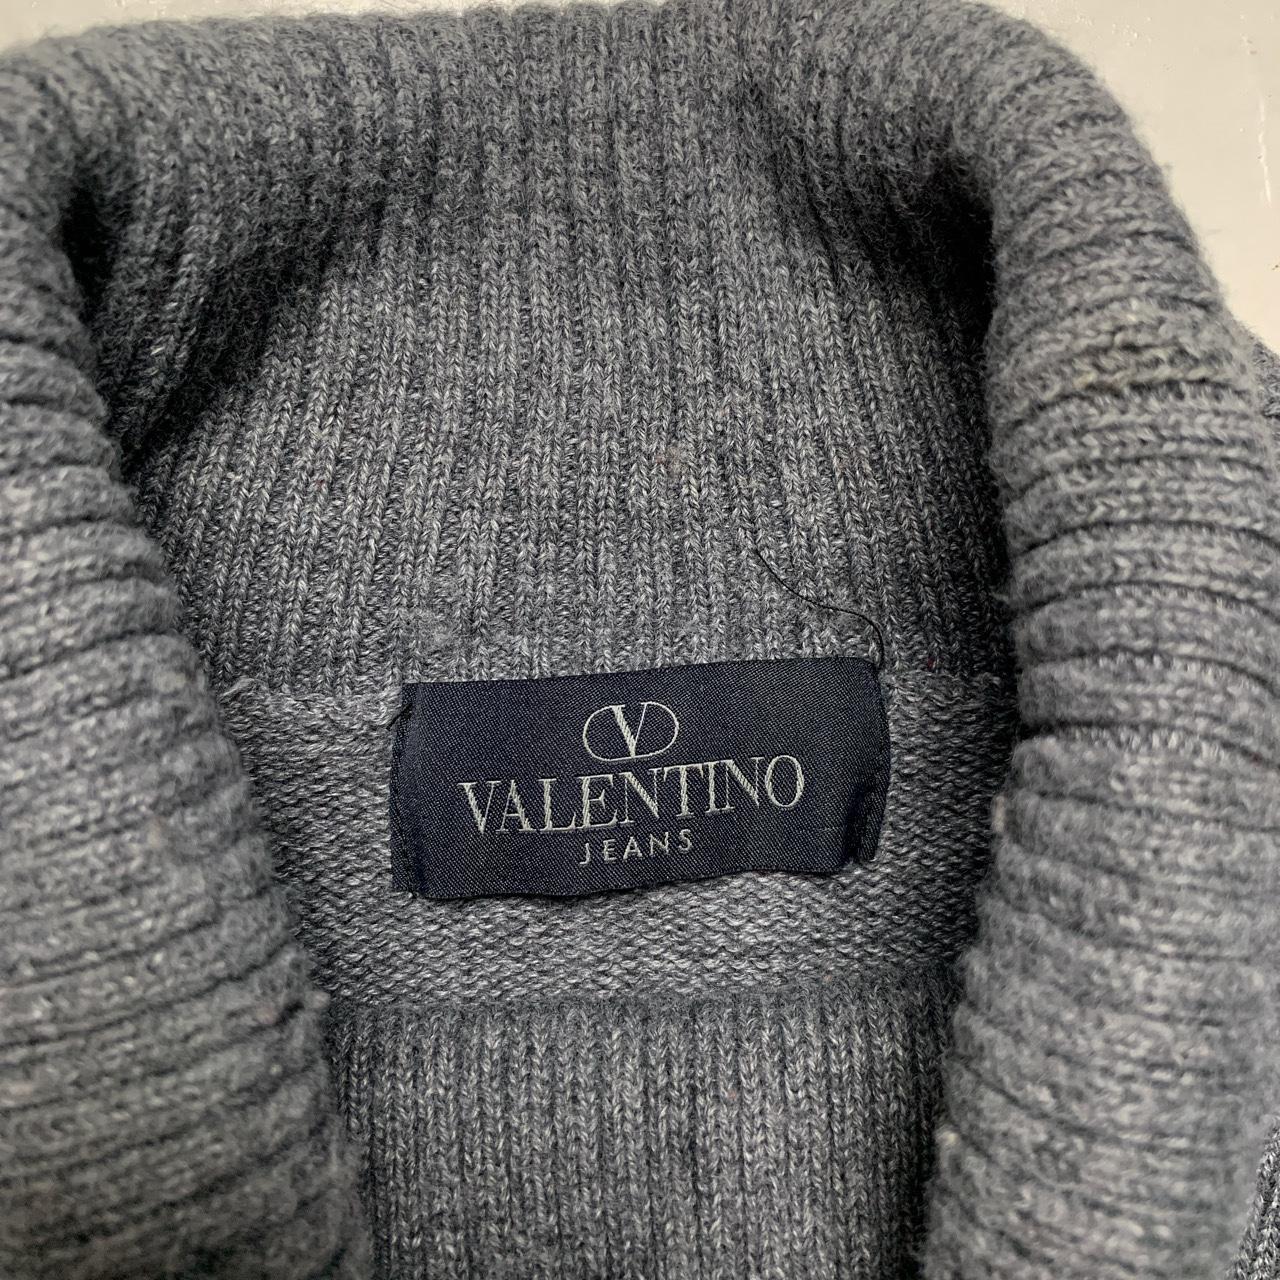 Valentino Jeans Vintage Grey Knitted Turtleneck Jumper